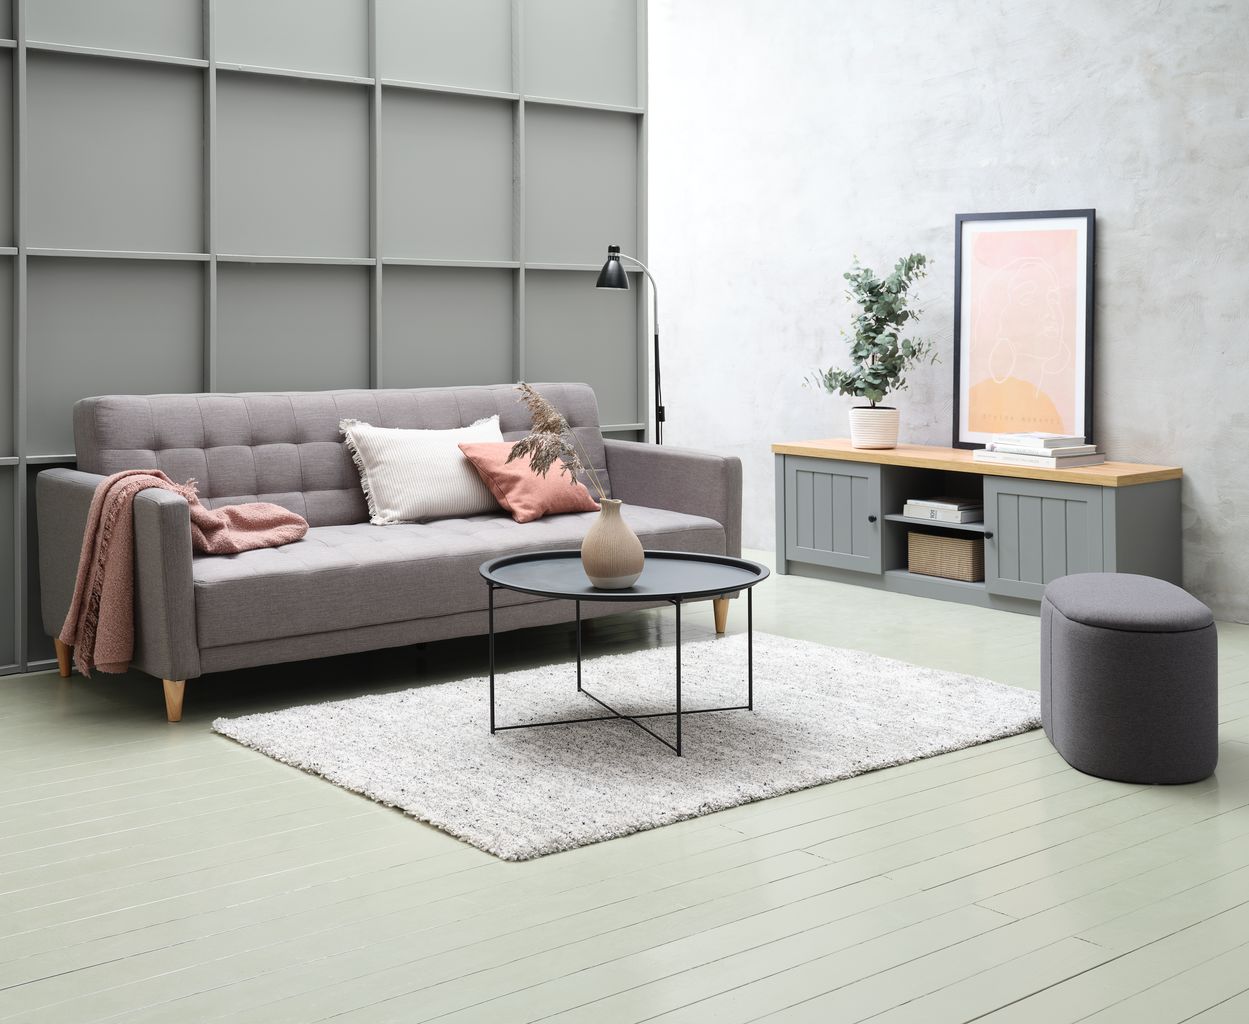 Mẫu phòng khách Scandinavian Style với thảm và các phụ kiện trang trí như chăn sofa, gối trang trí tinh tế